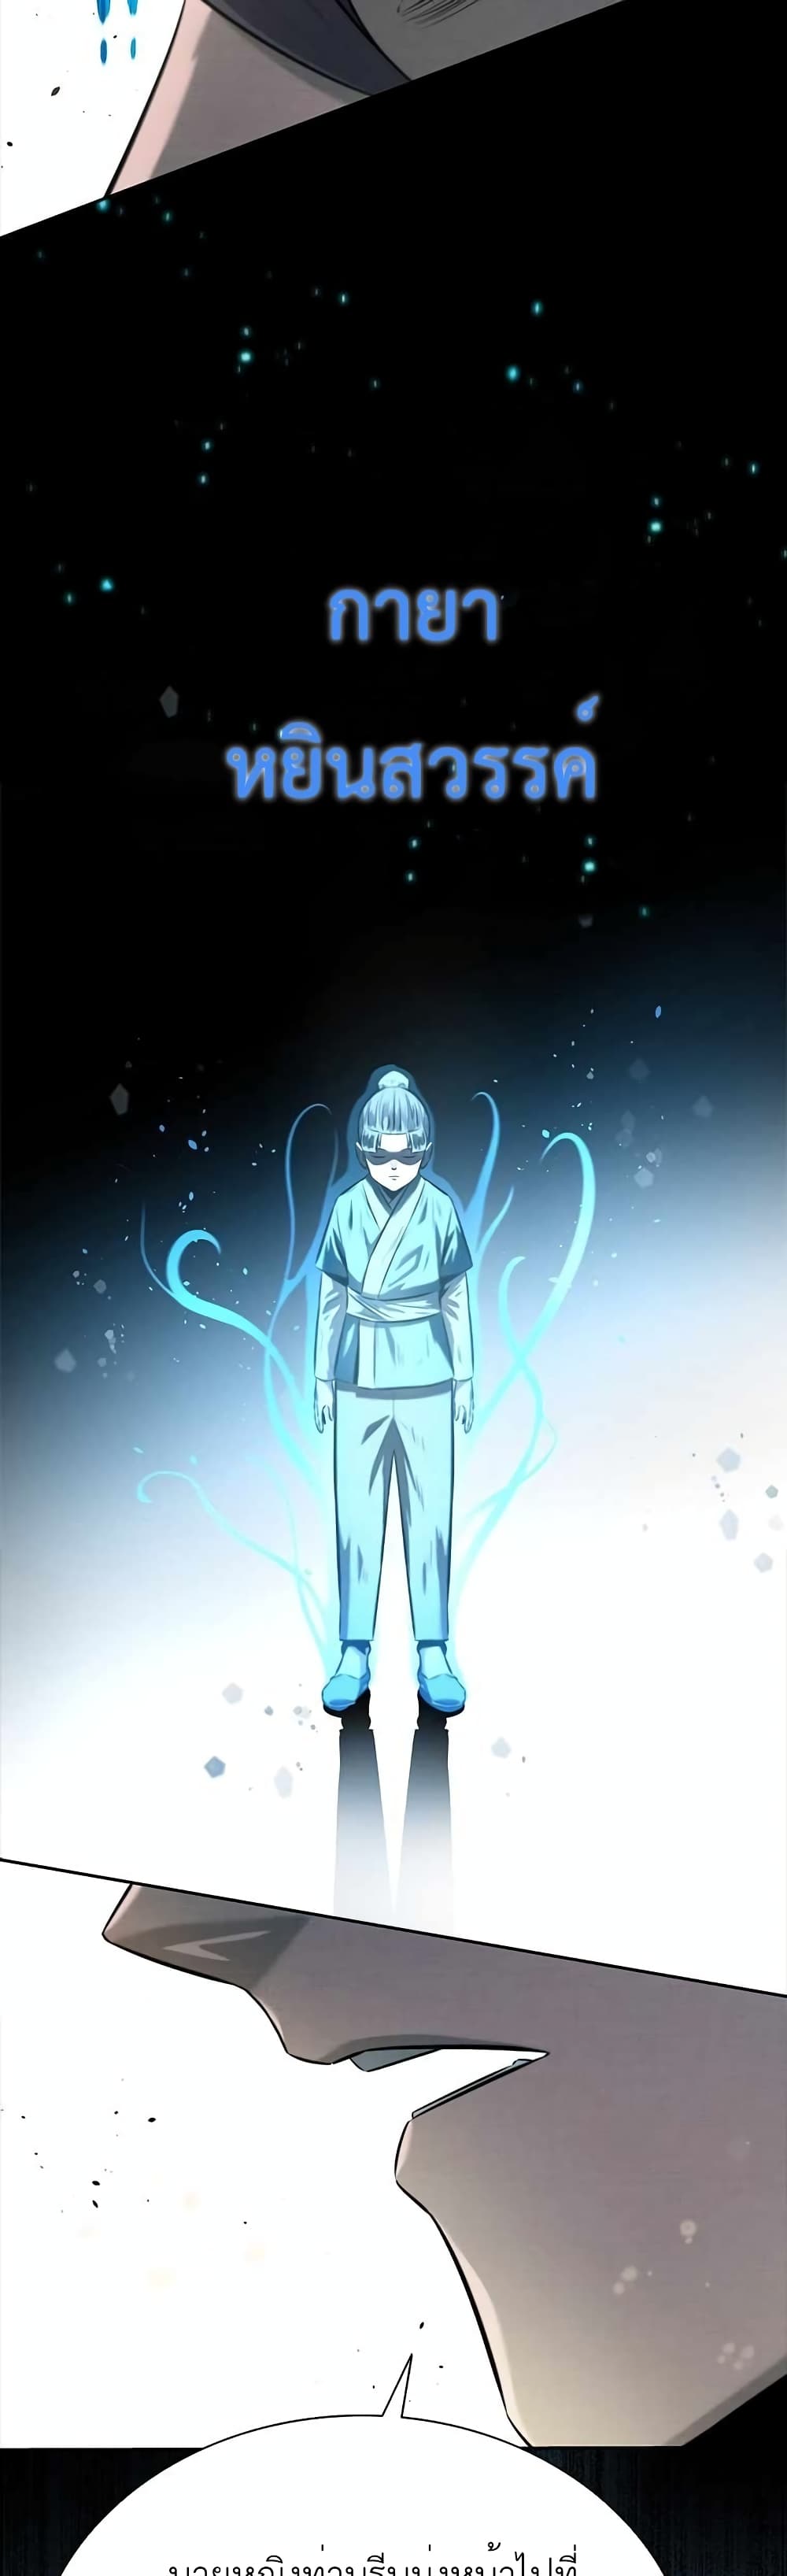 Moon-Shadow Sword Emperor 12-12